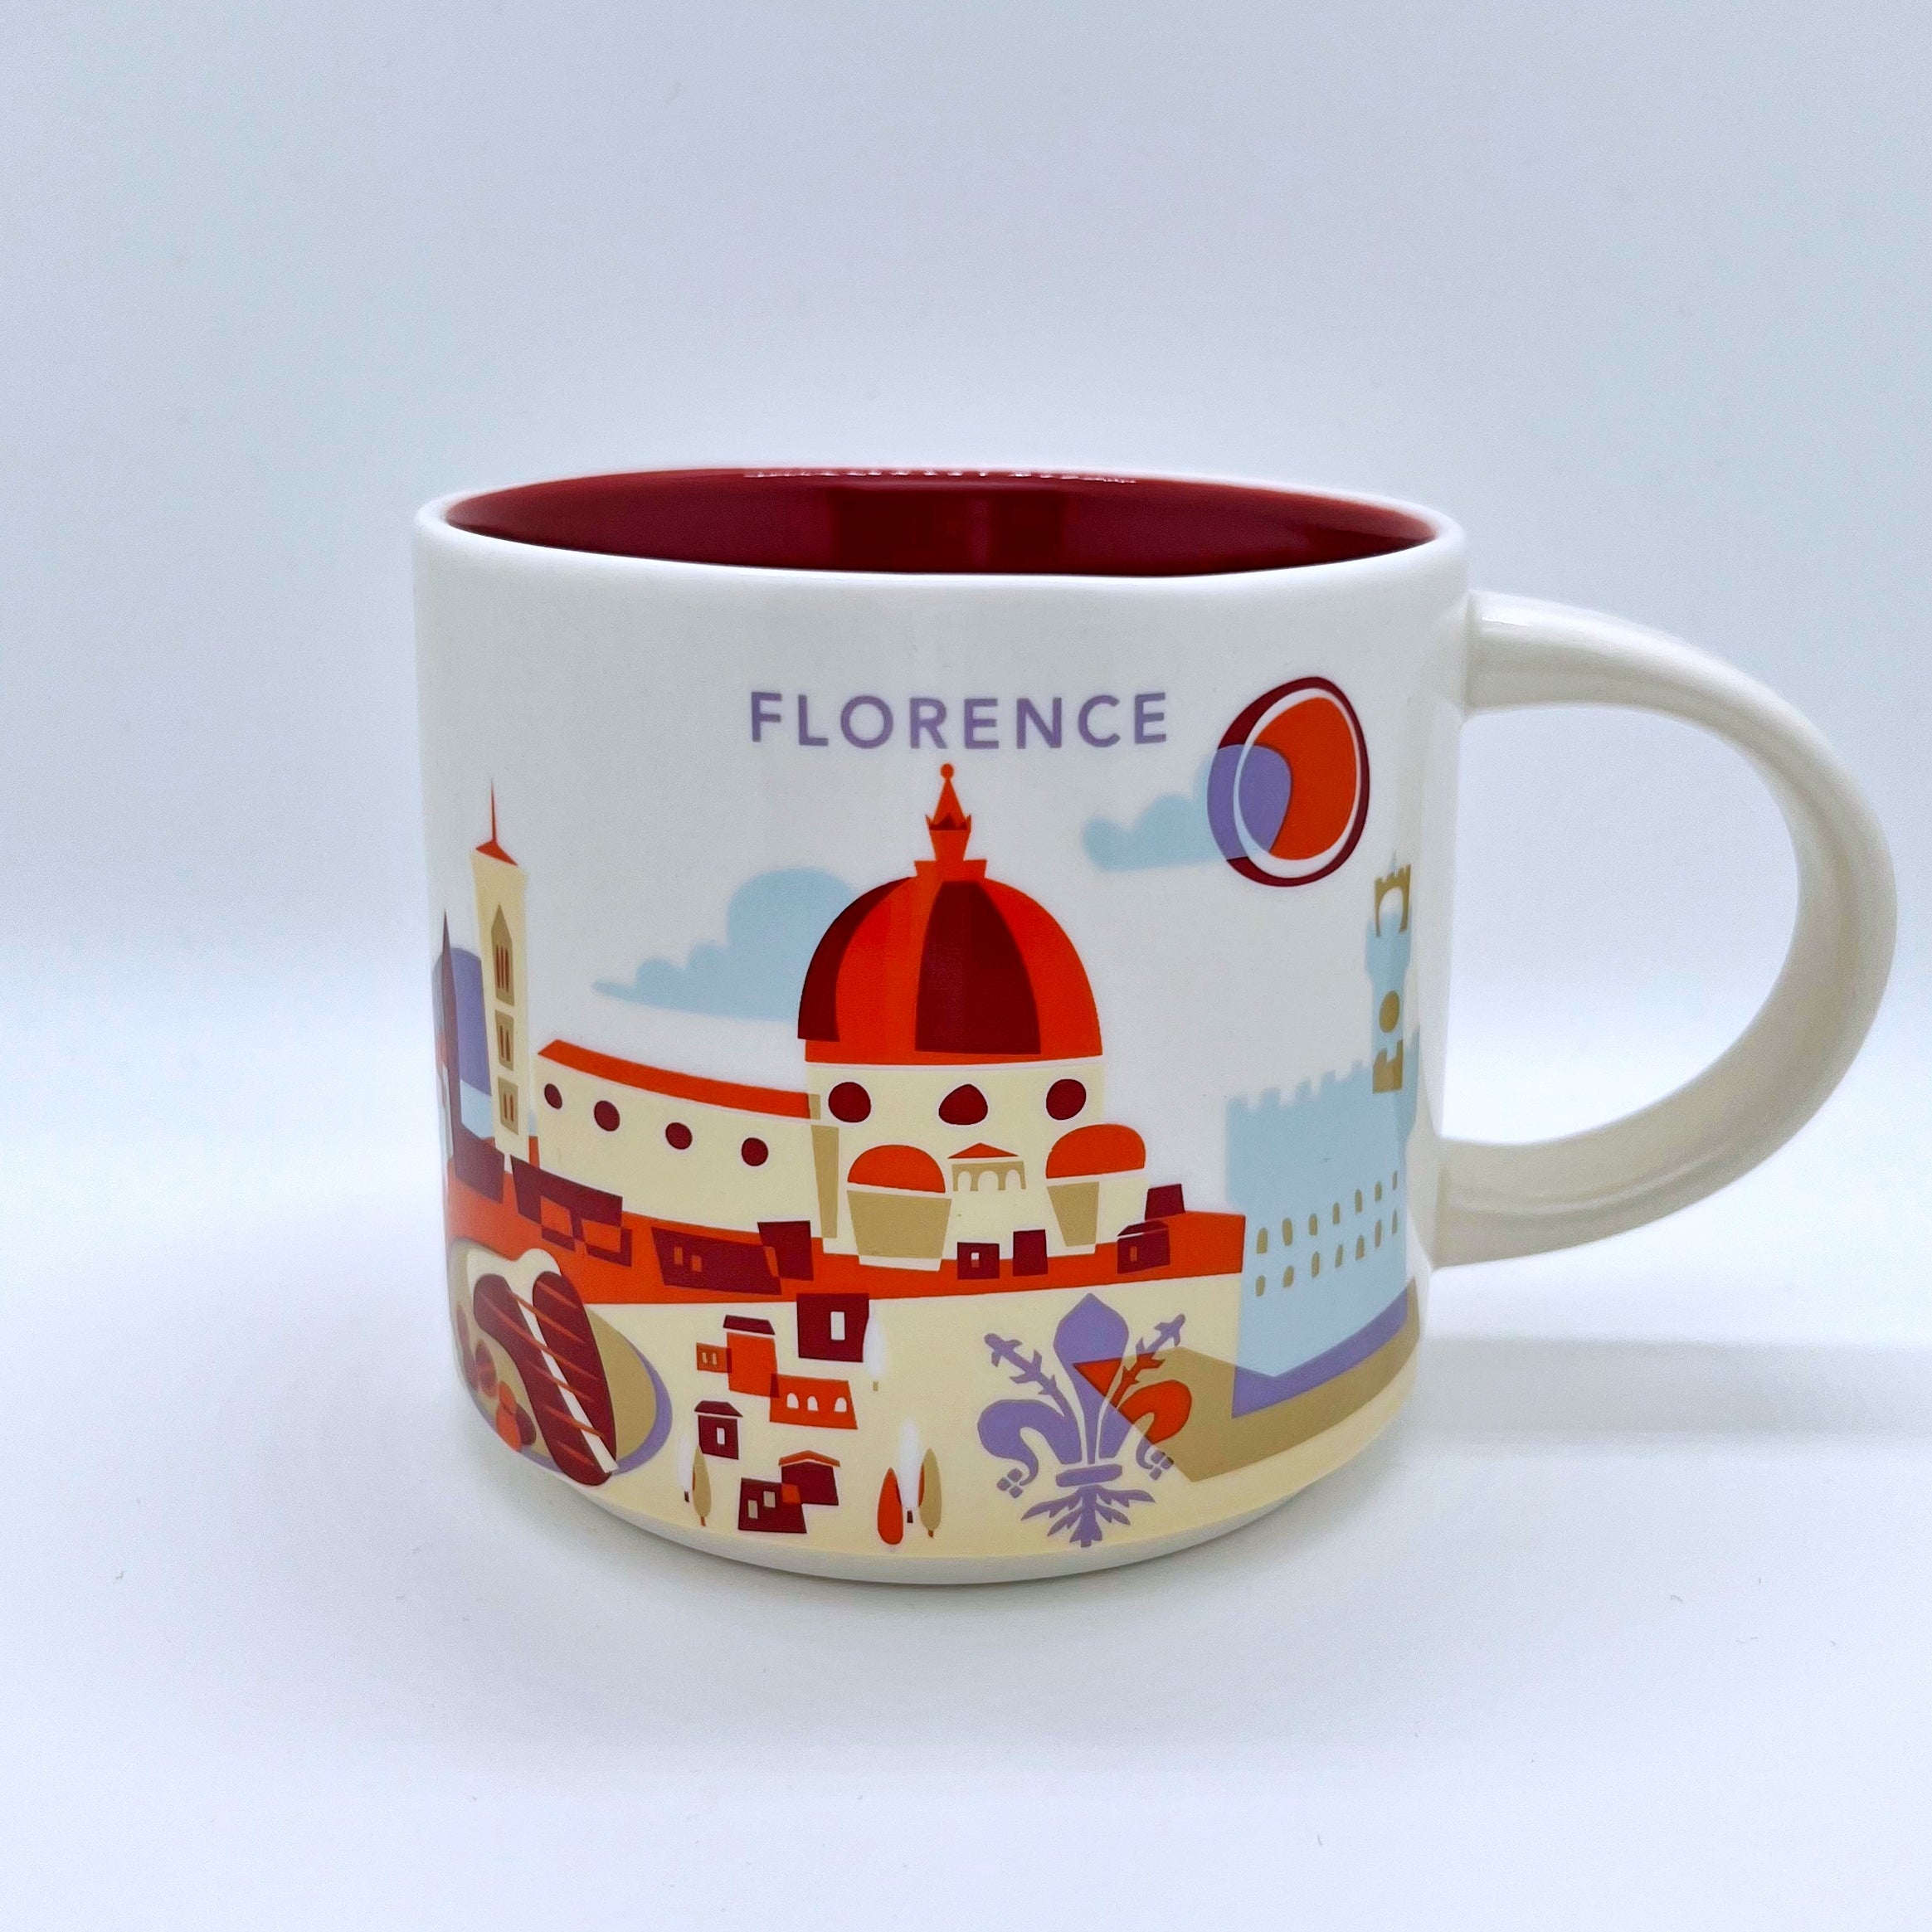 Kaffee Tee oder Cappuccino Tasse von Starbucks mit gemalten Bildern aus der Stadt Florenz